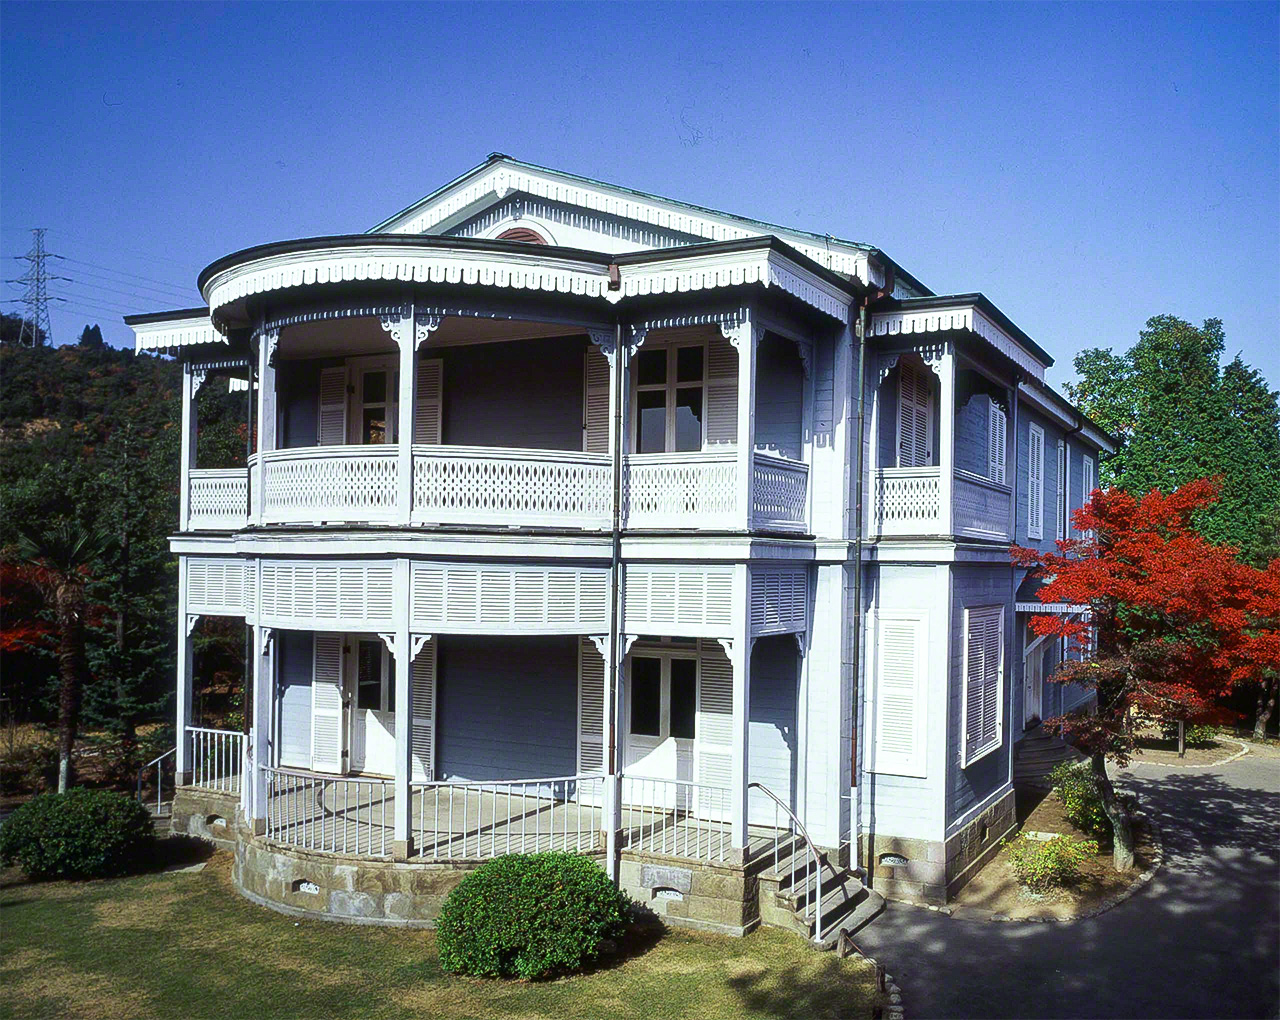 La maison de Saigô Tsugumichi, construite en 1880 à Tokyo, dans l’actuel quartier de Meguro. Tsugumichi était le frère aîné de Saigô Takamori, un célèbre leader de la Restauration de Meiji.